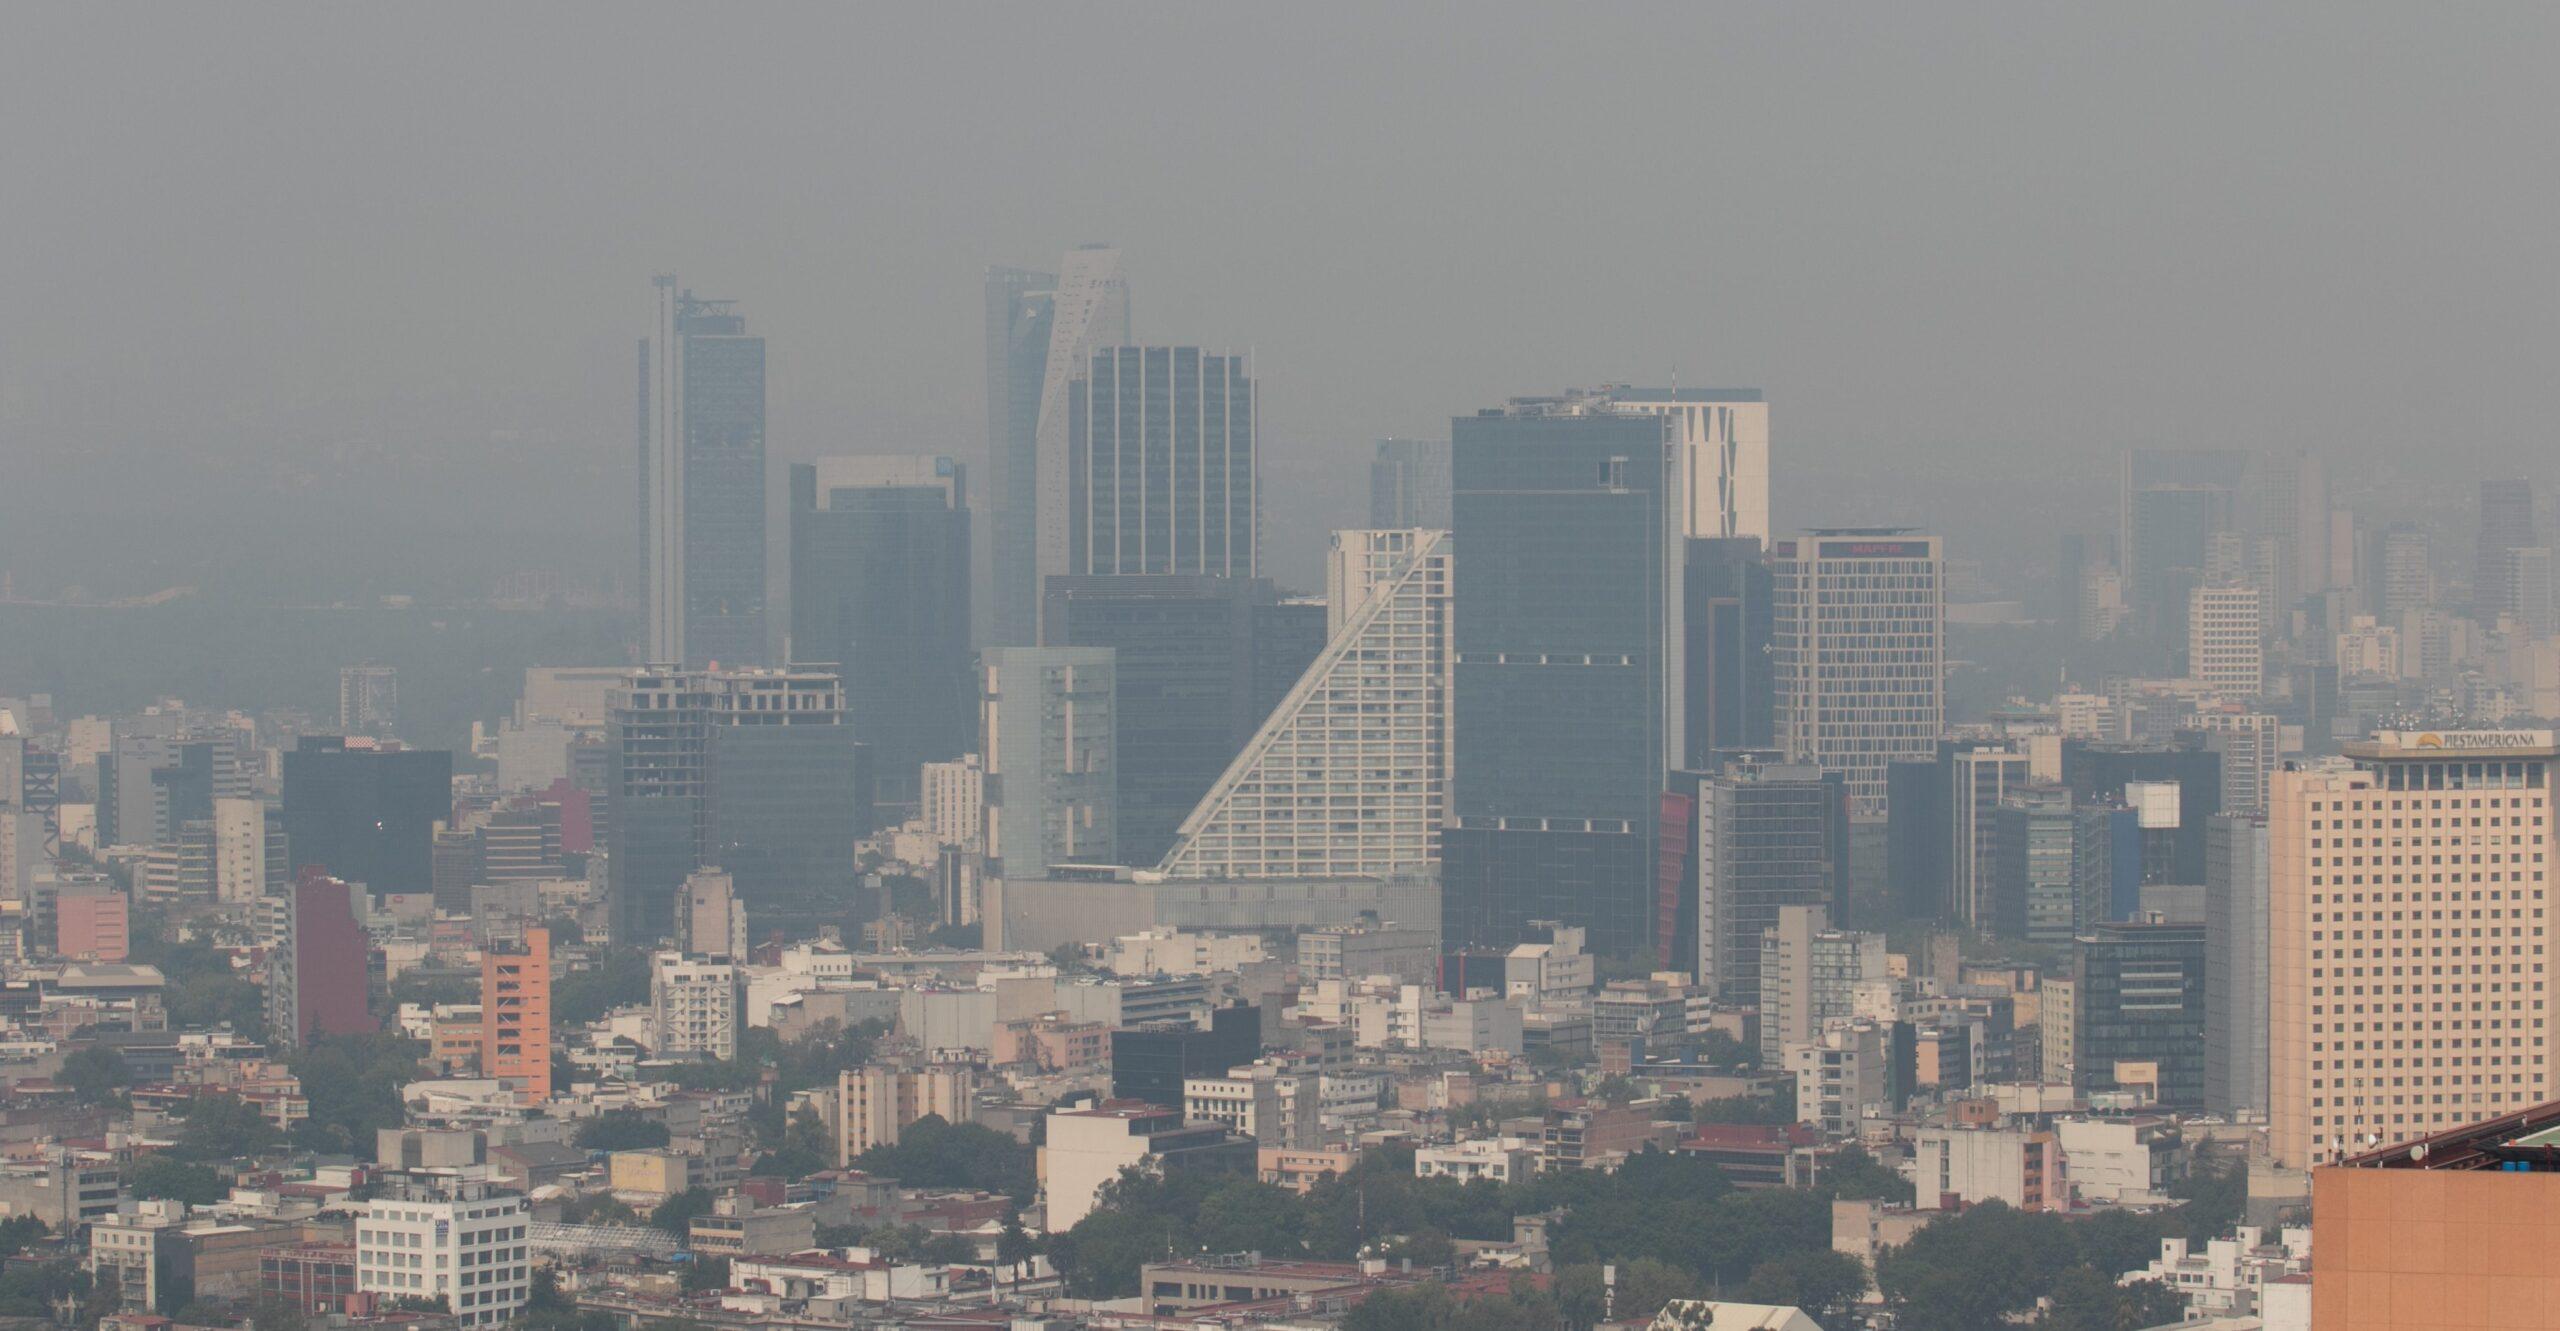 Hay 11 estados con mala calidad del aire, pero no para todos hay información suficiente